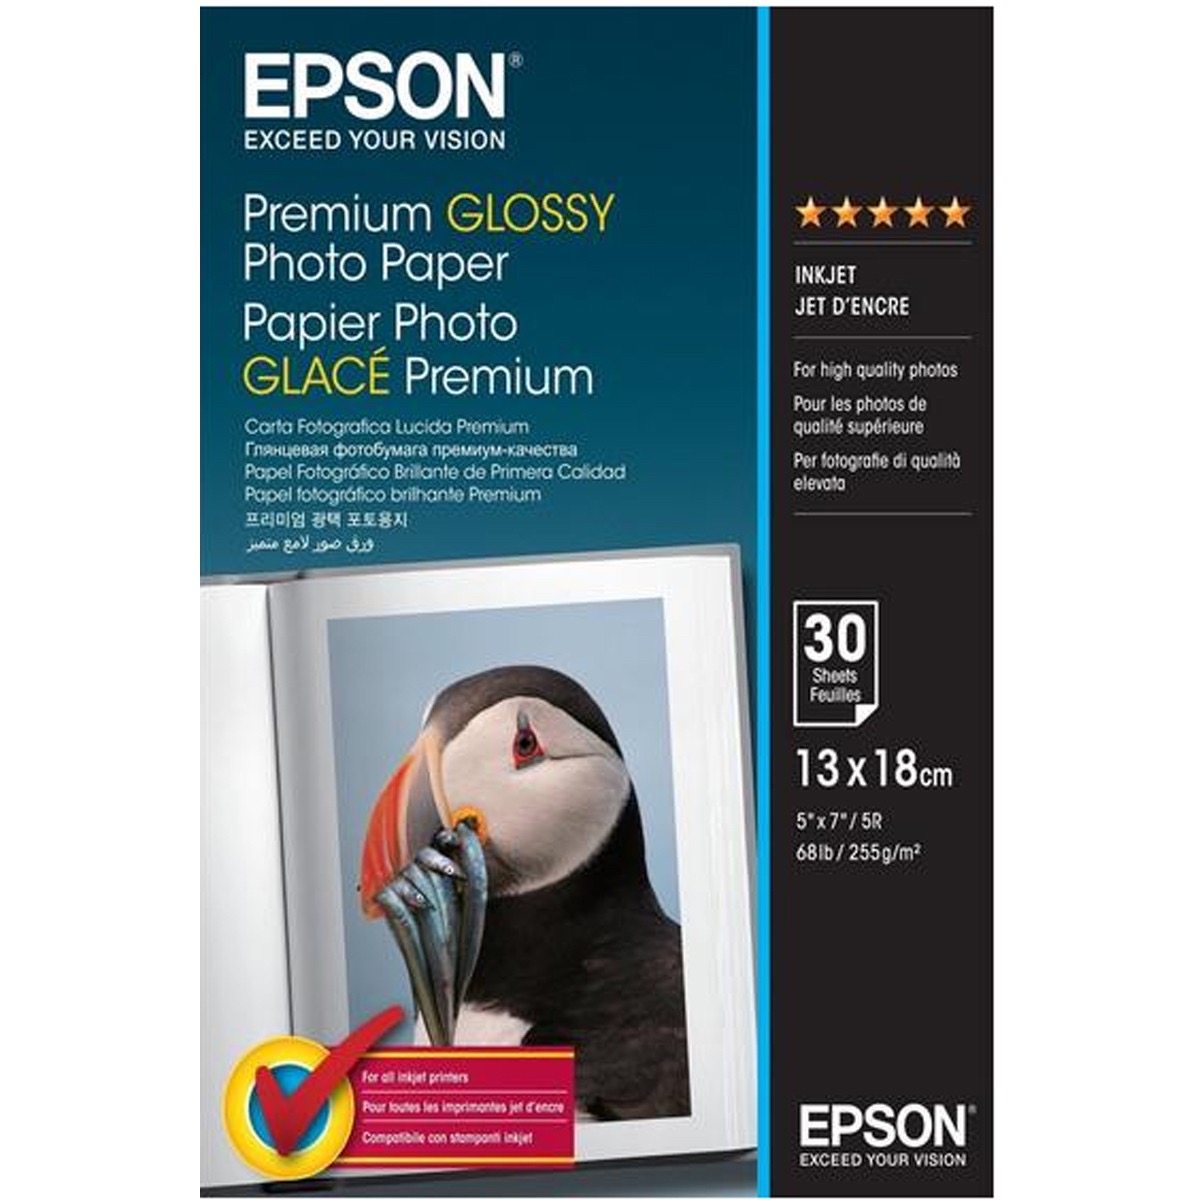 Epson Premium Glossy Photo Papier 13x18, 30 Blatt 255g/m²